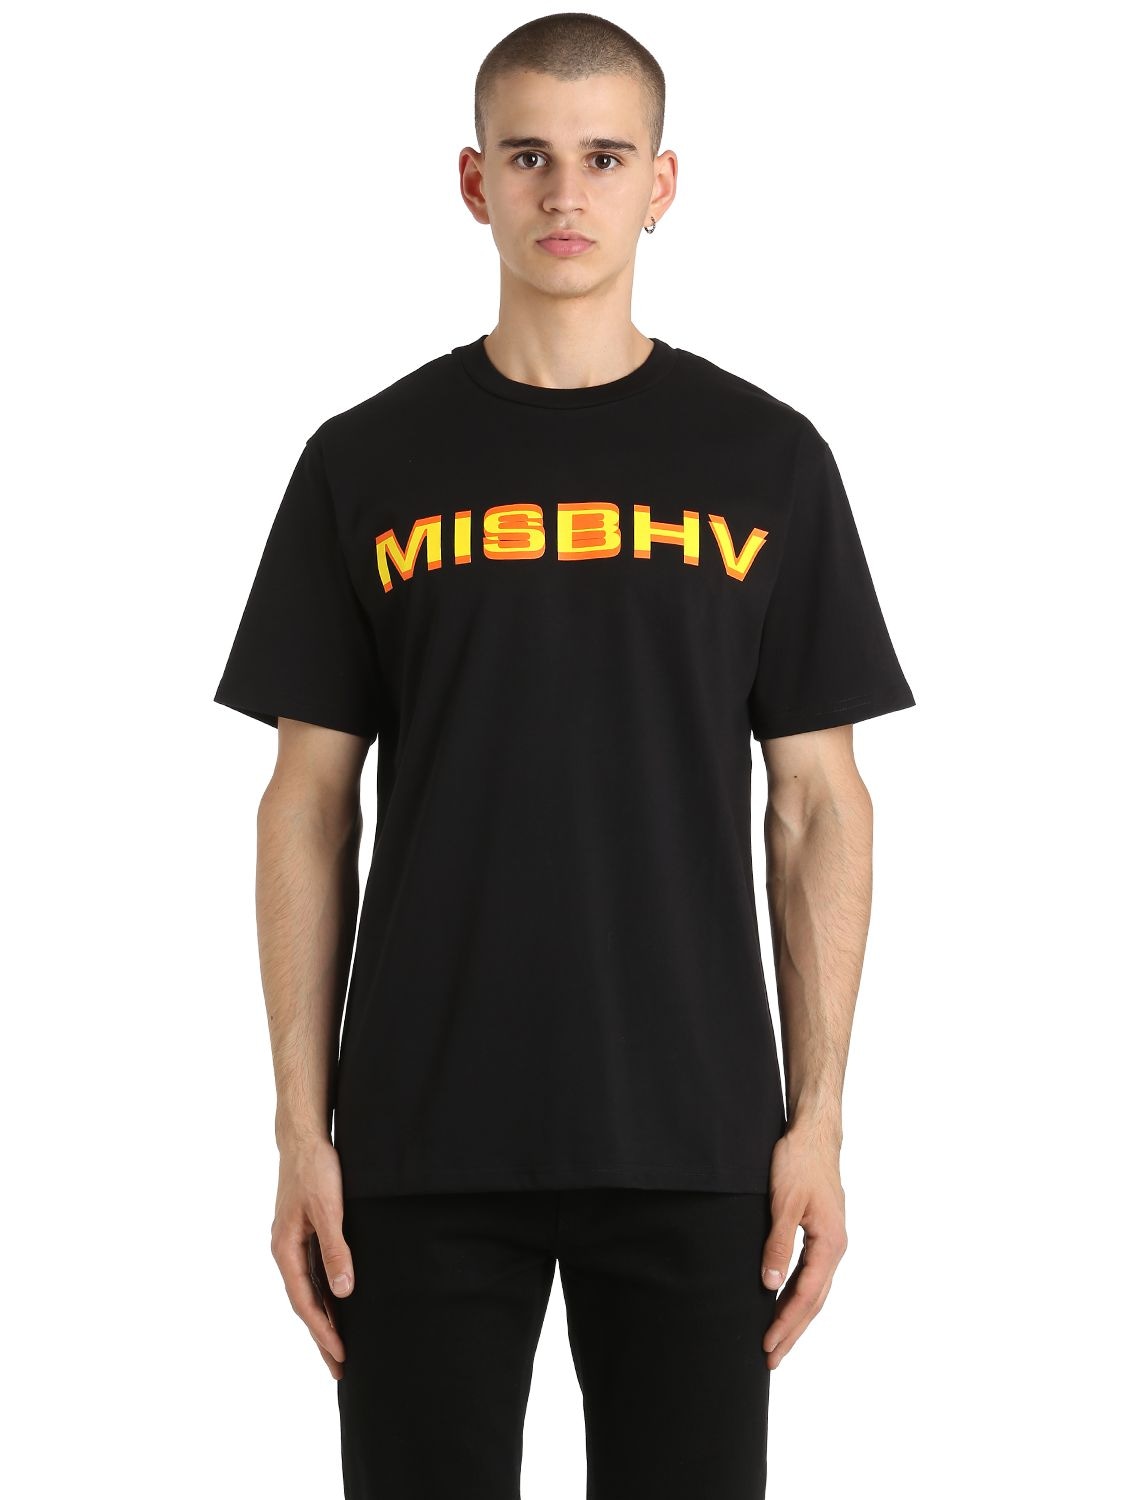 MISBHV MISBHV COTTON JERSEY T-SHIRT,66ILF7015-RlcxNy1ULTRC0